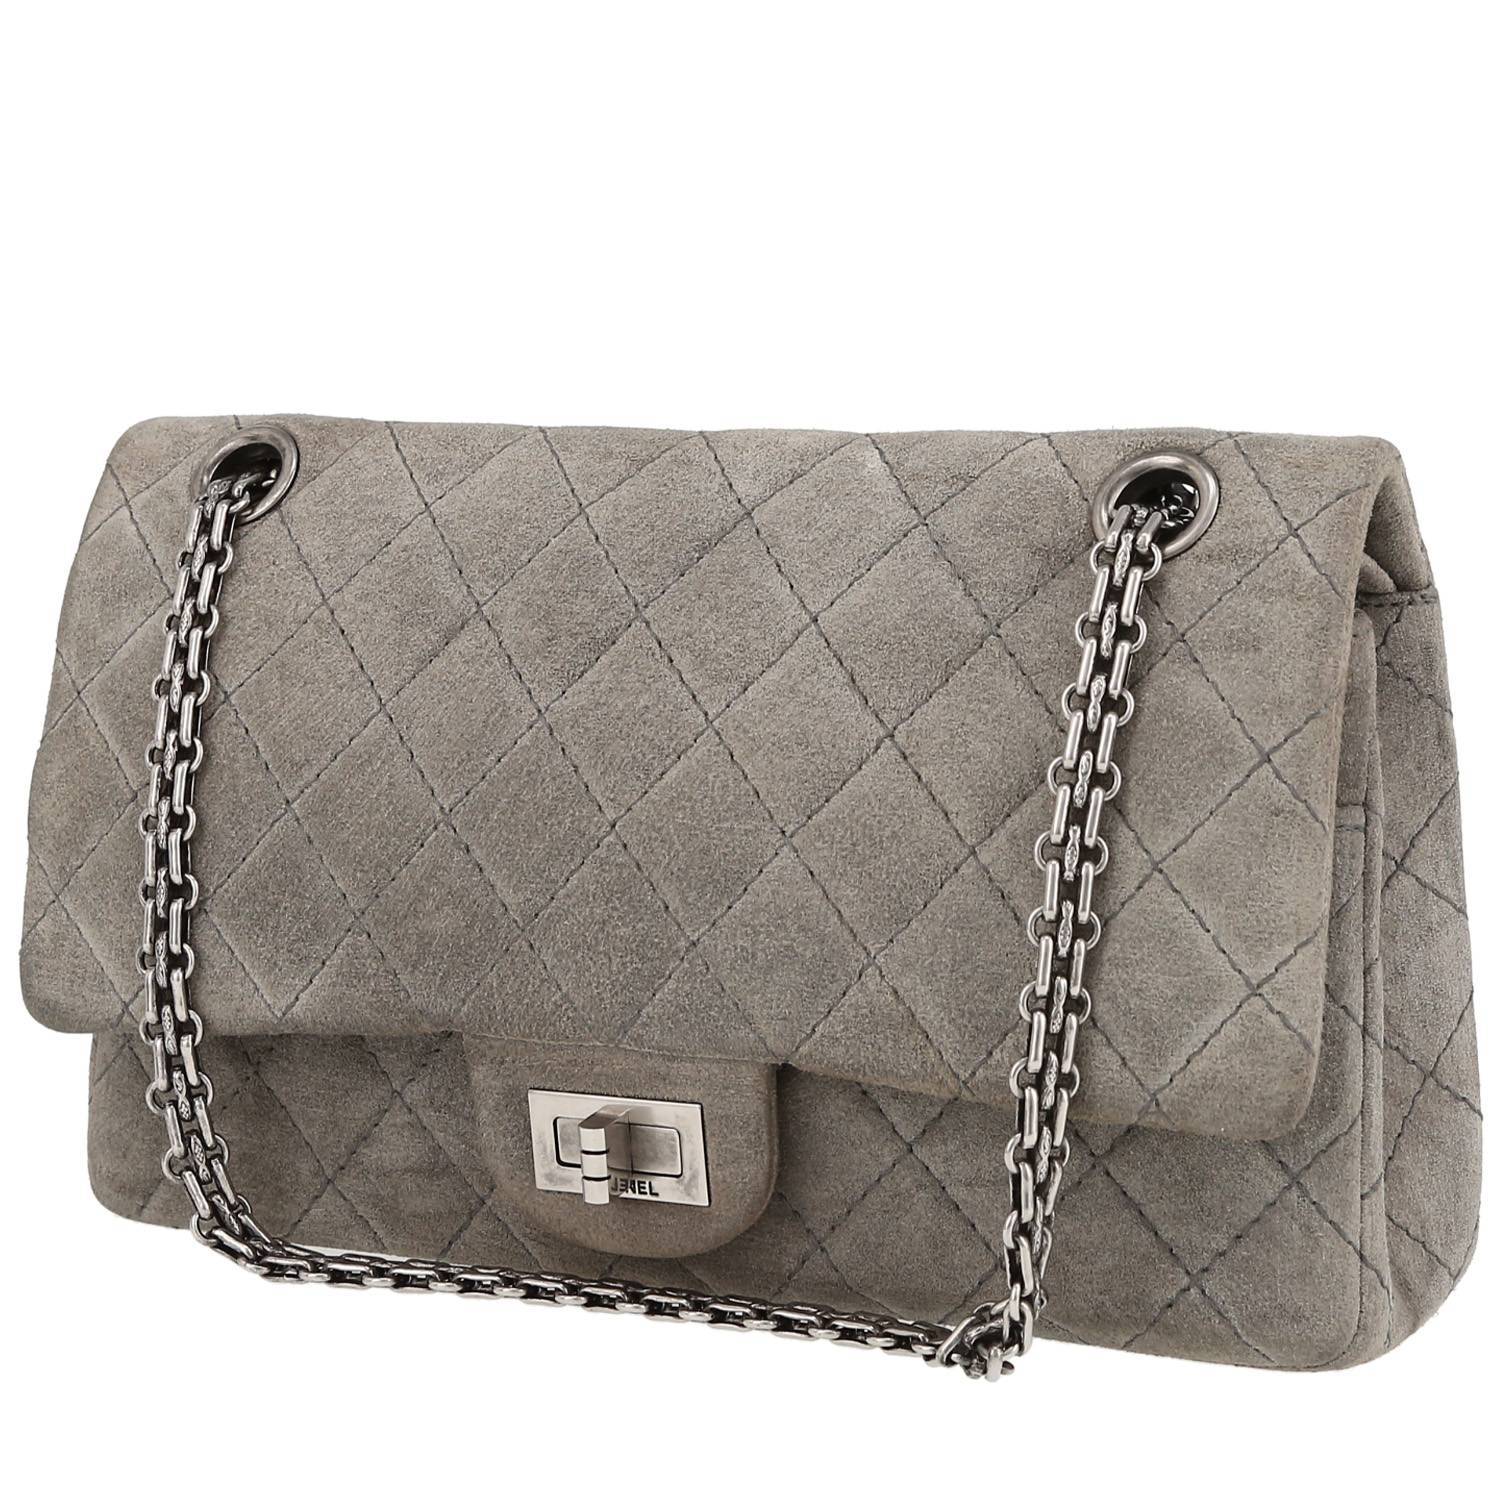 Chanel 2.55 Shoulder bag 403208